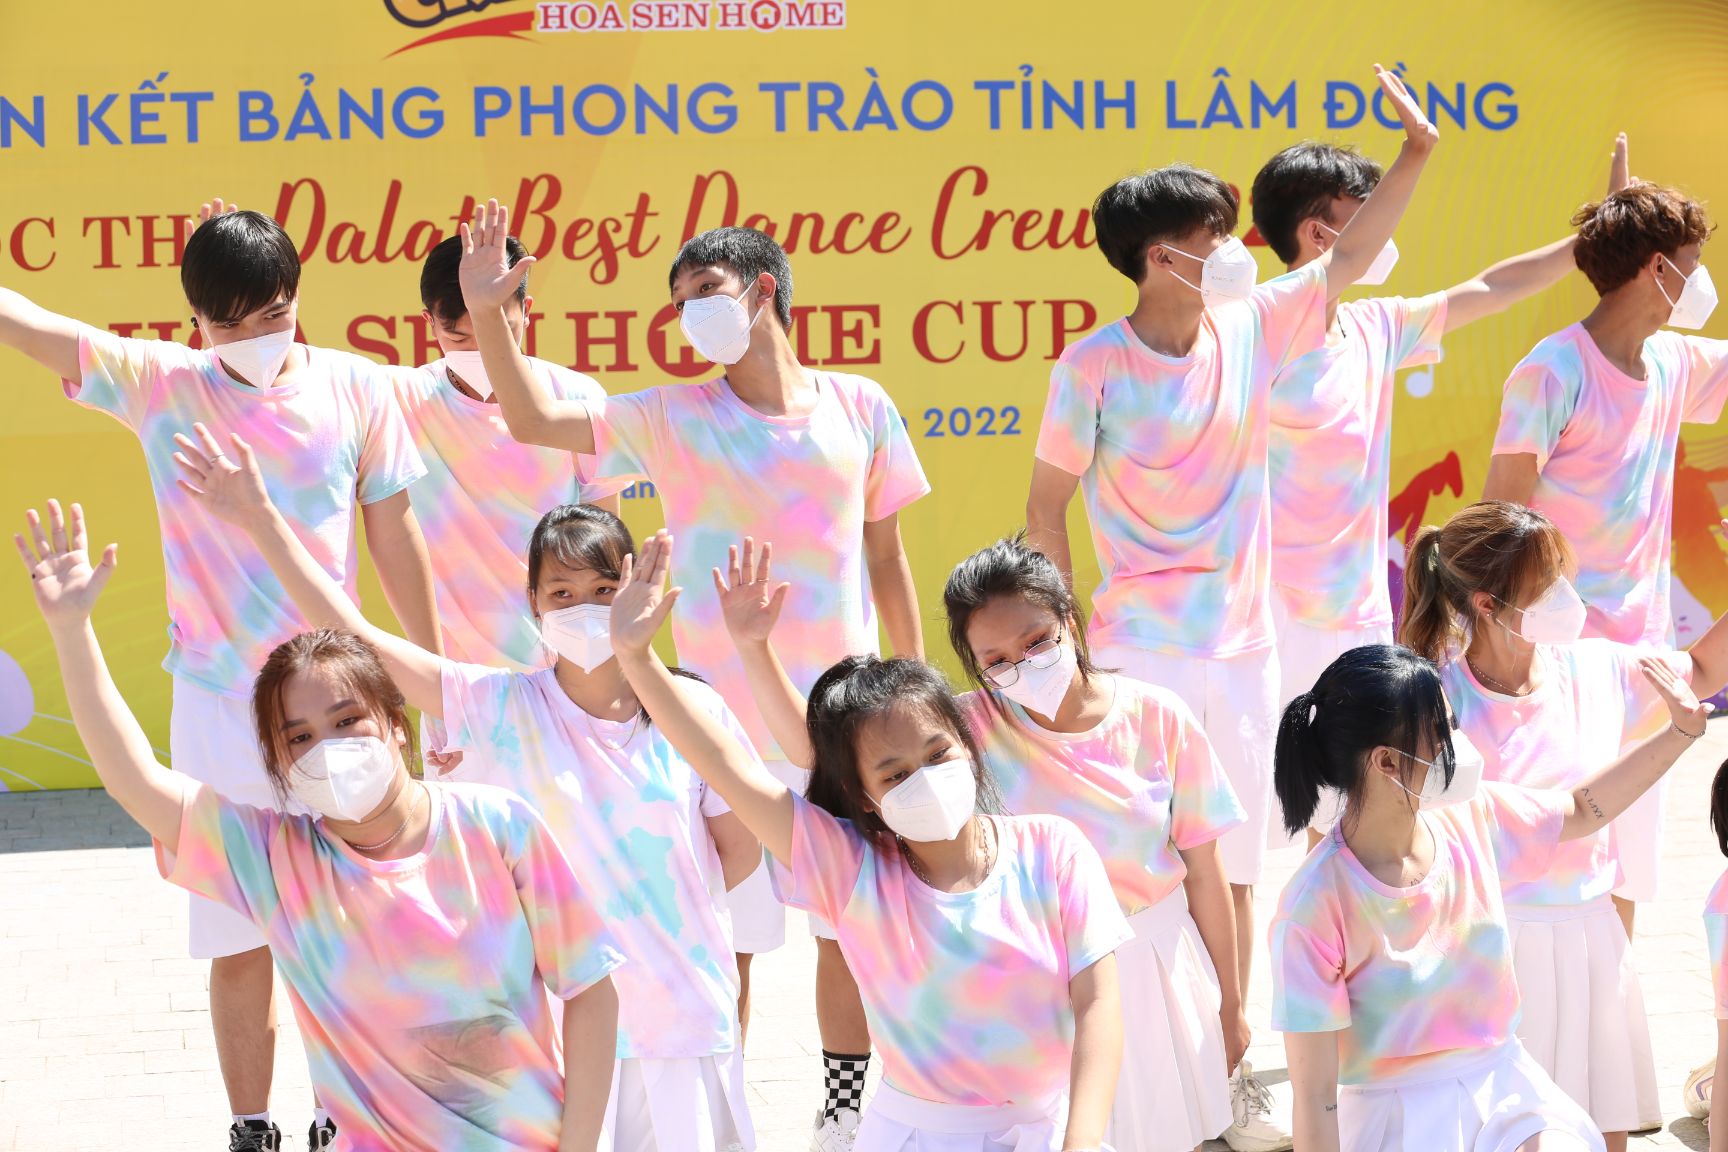 “Dalat Best Dance Crew 2022 3 Hàng loạt nhóm nhảy trẻ đổ bộ tại Đà Lạt, lan tỏa thông điệp tích cực